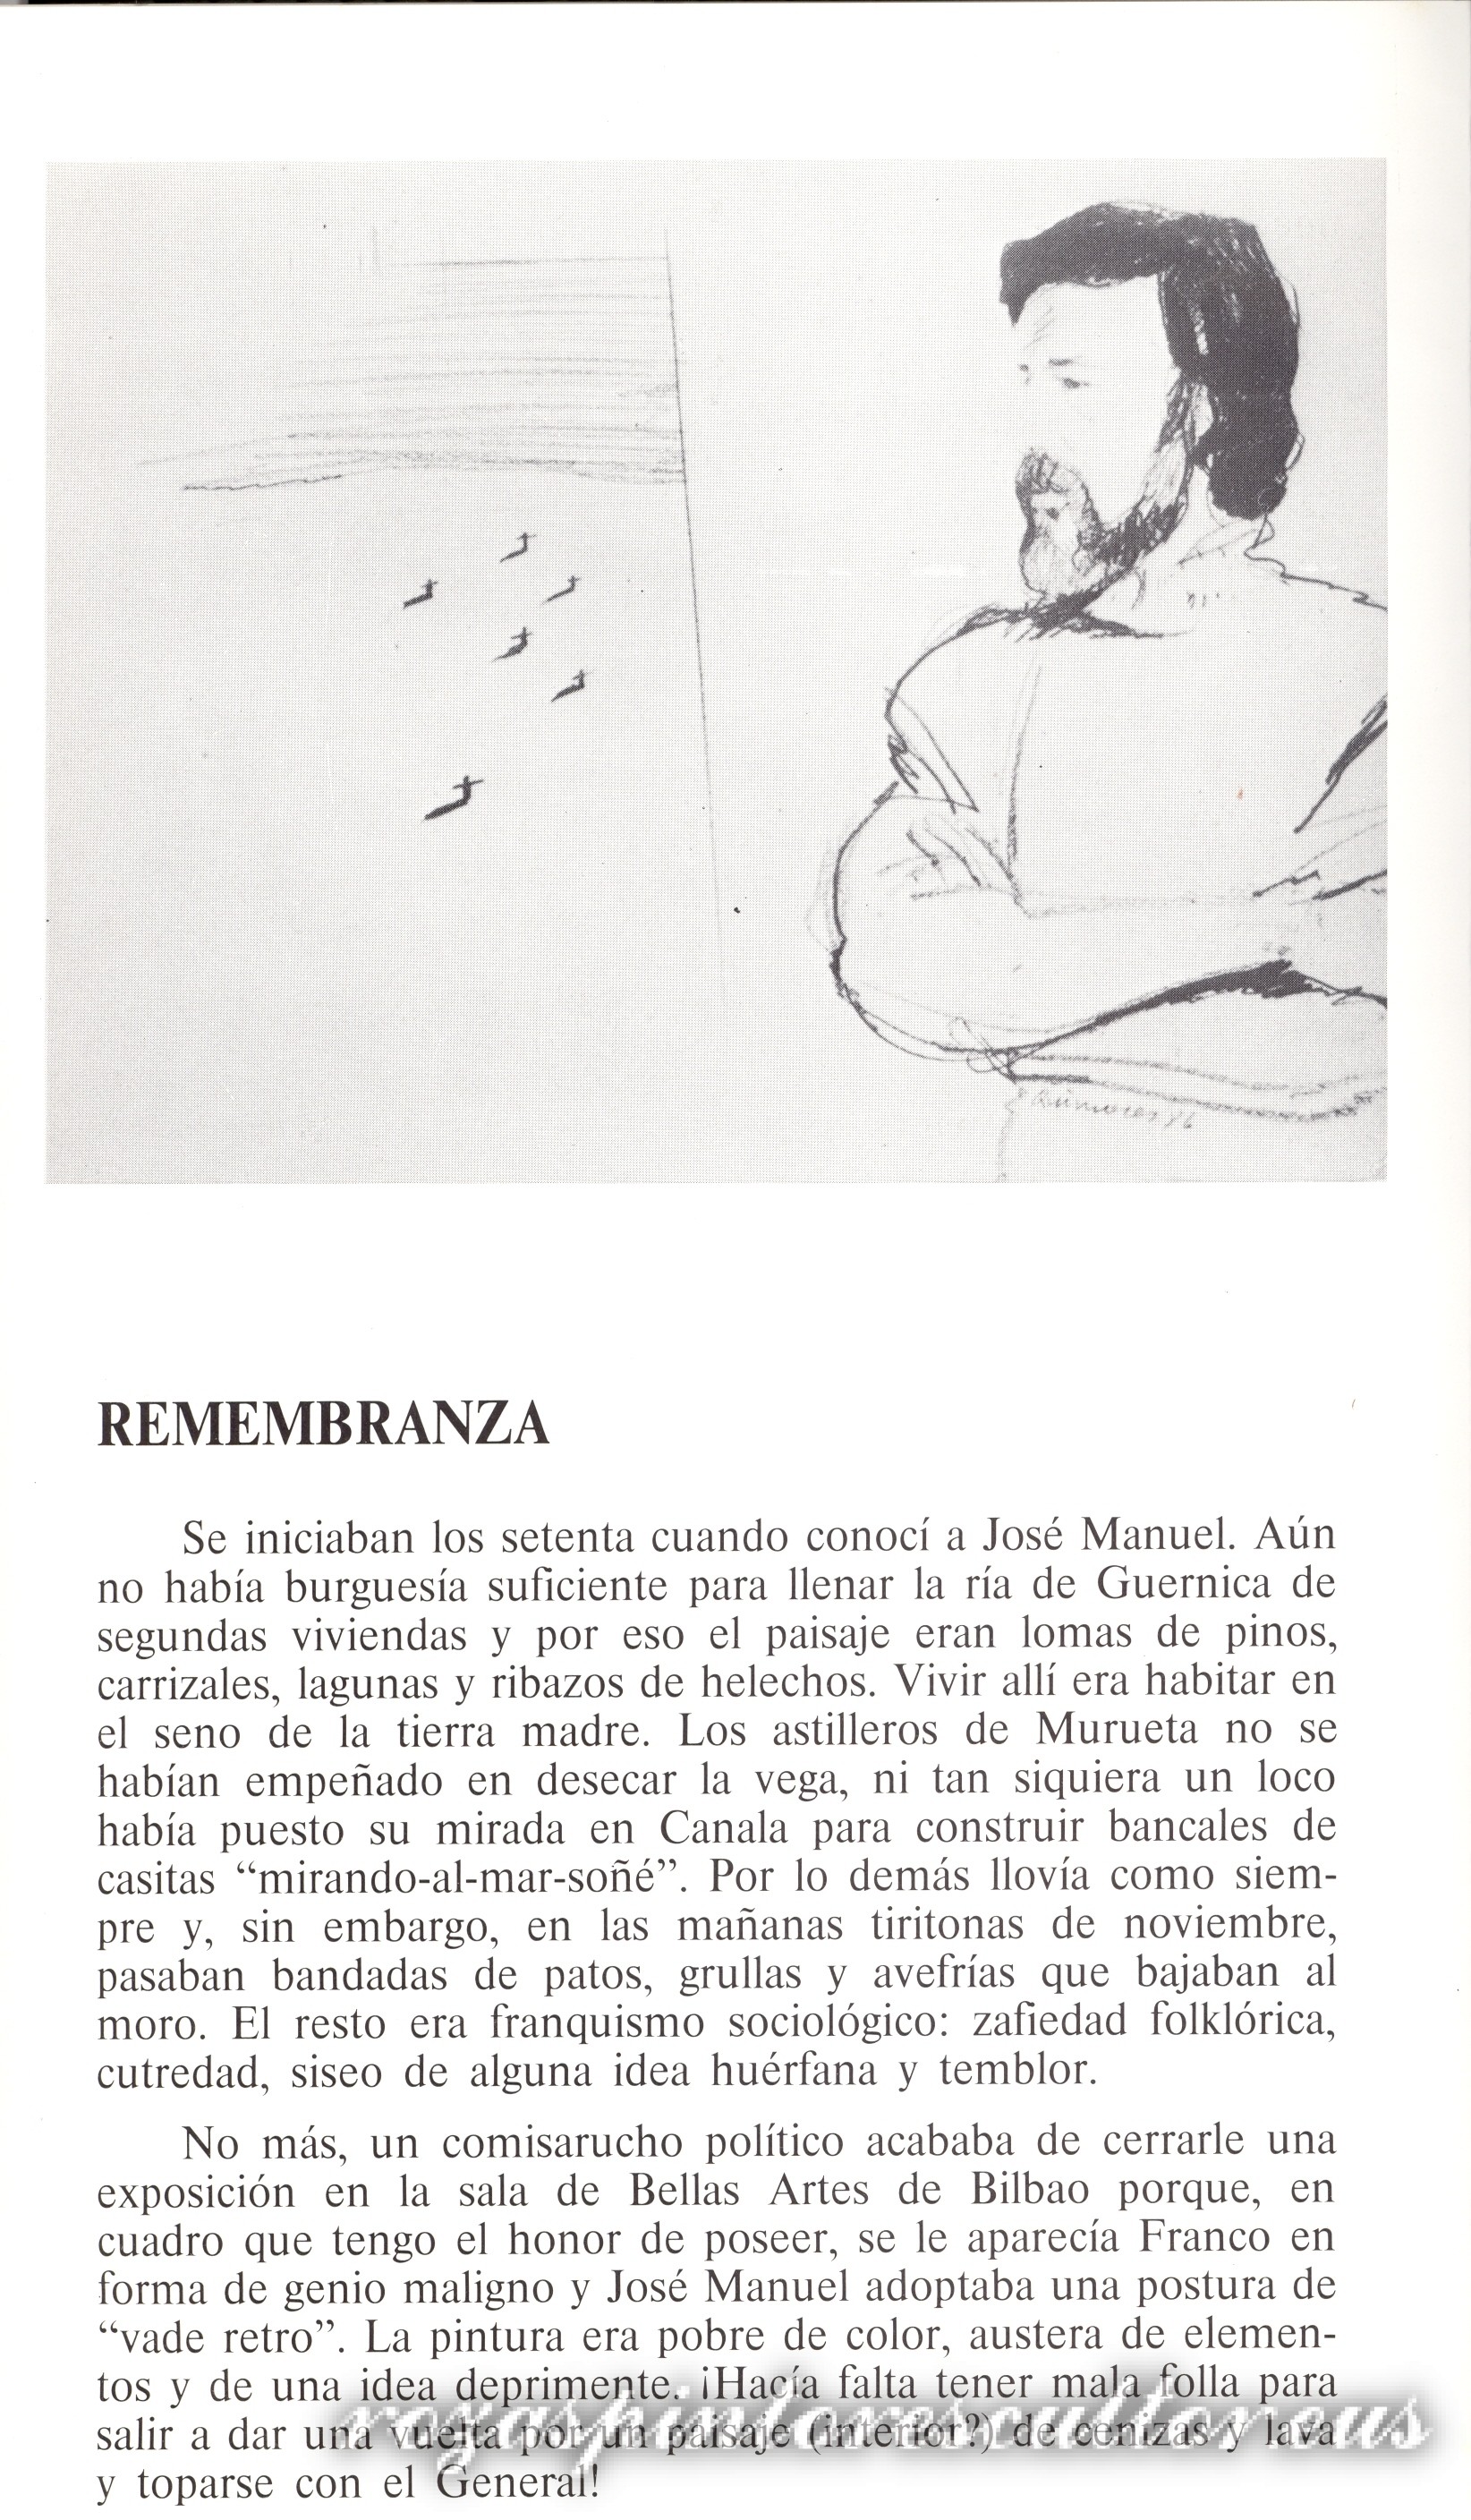 1988 Remembrance – Luis Lopez de Dicastillo